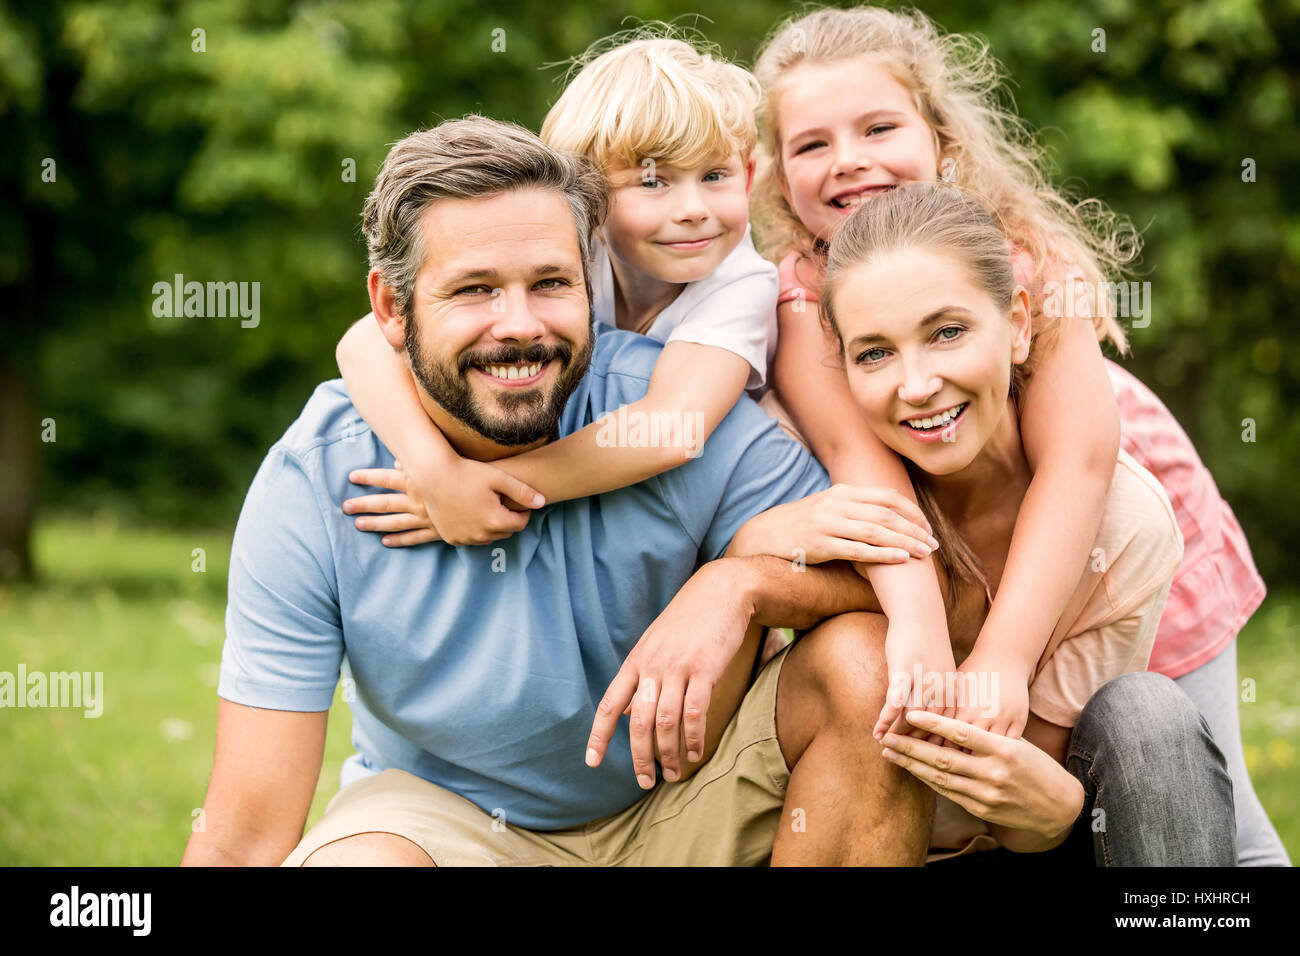 Harmonische Familie mit zwei glückliche Kinder zusammen in eine große Umarmung Stockfoto